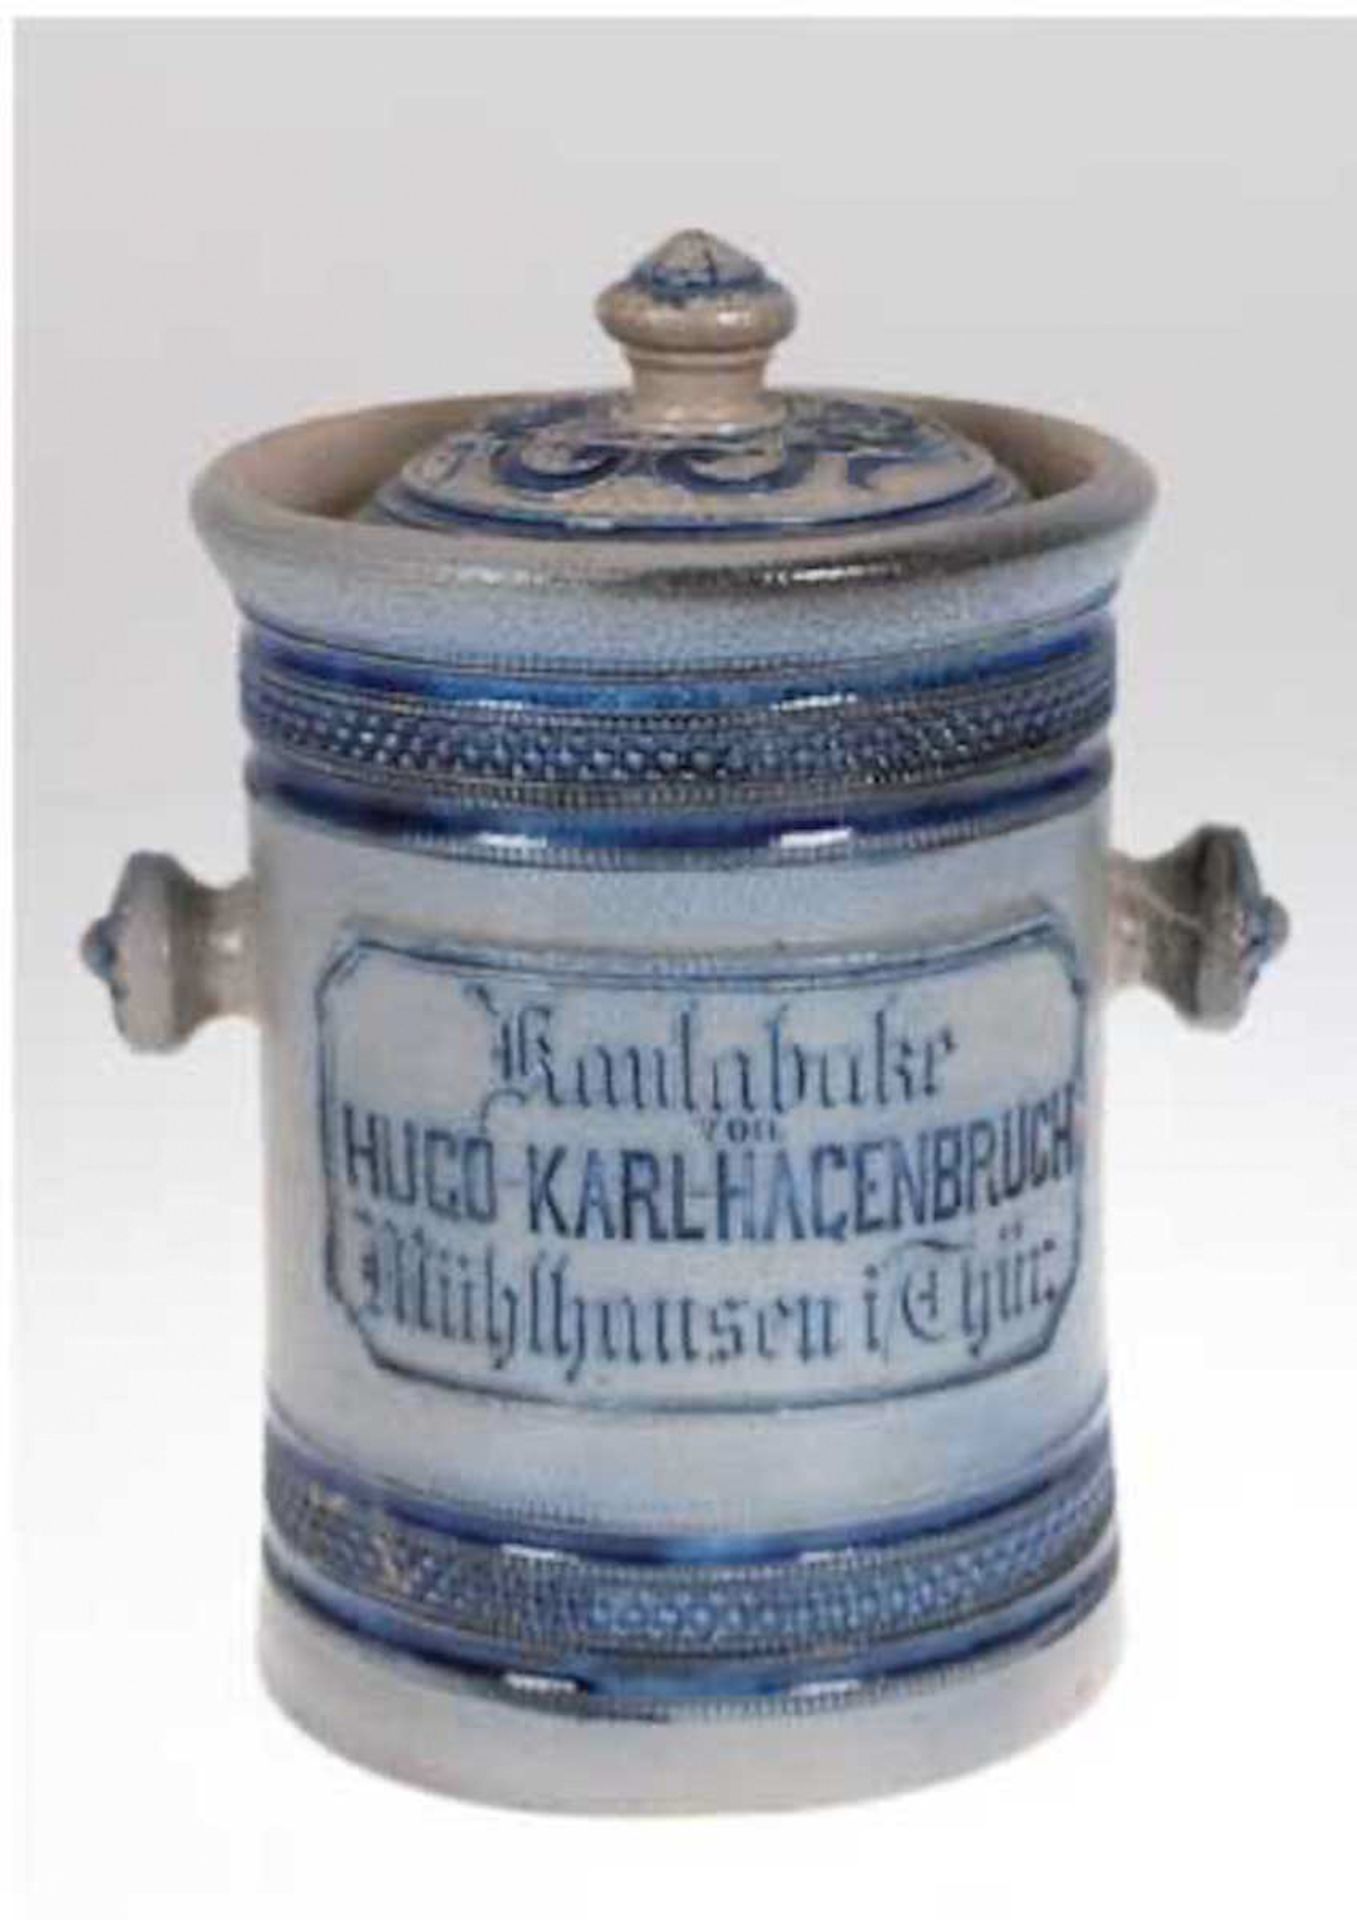 Kautabaktopf um 1900, "Kautabake von Hugo-Karl-Hagenbruch, Mühlhausen i/Thür.",salzglasiert